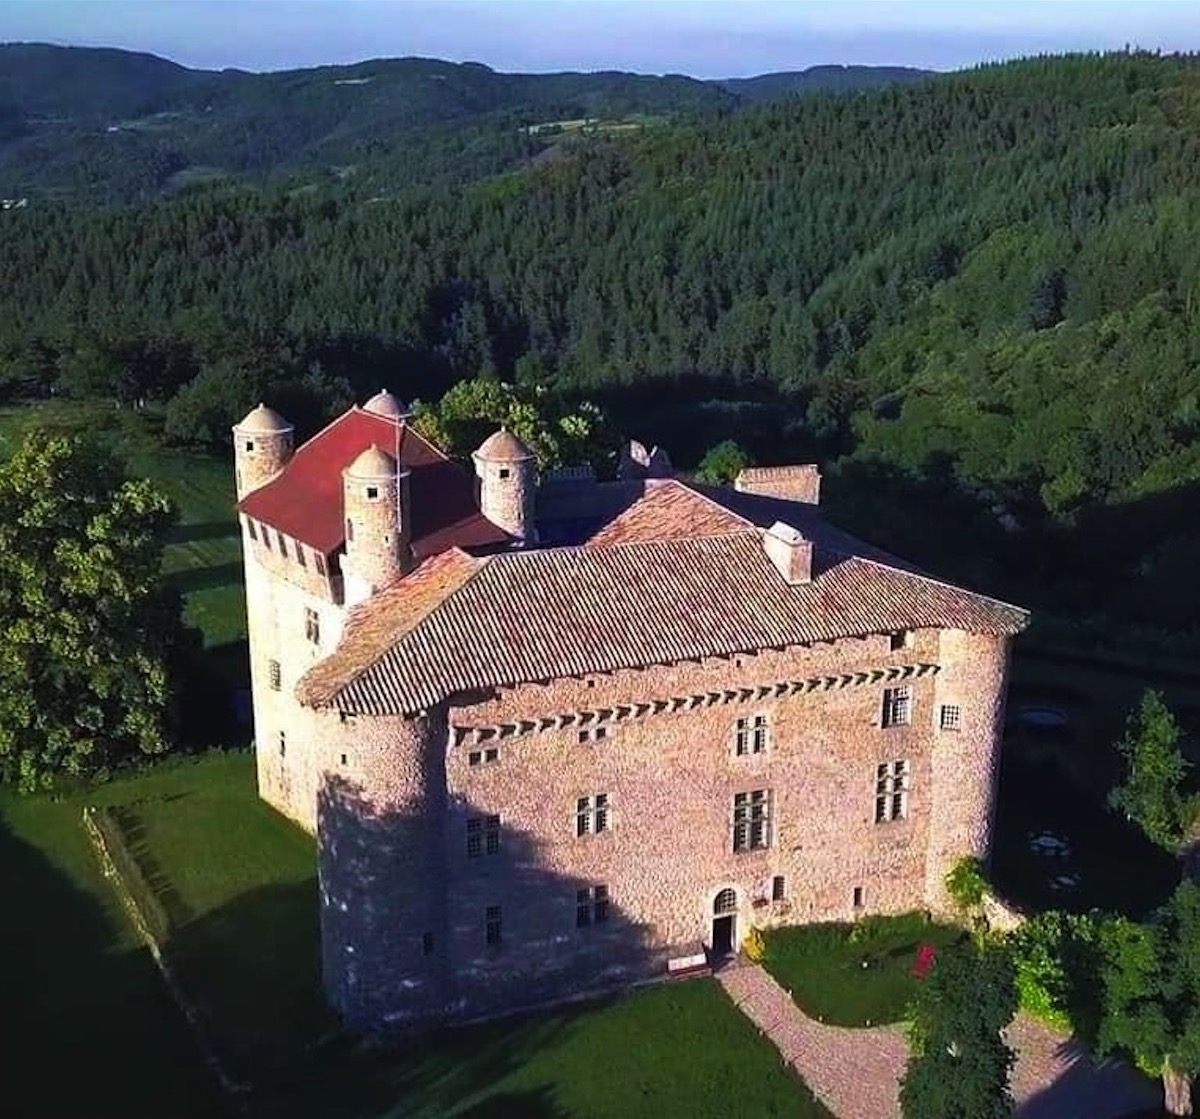 Cet été faites un chantier participatif dans le parc d’un château médiéval en Ardèche !